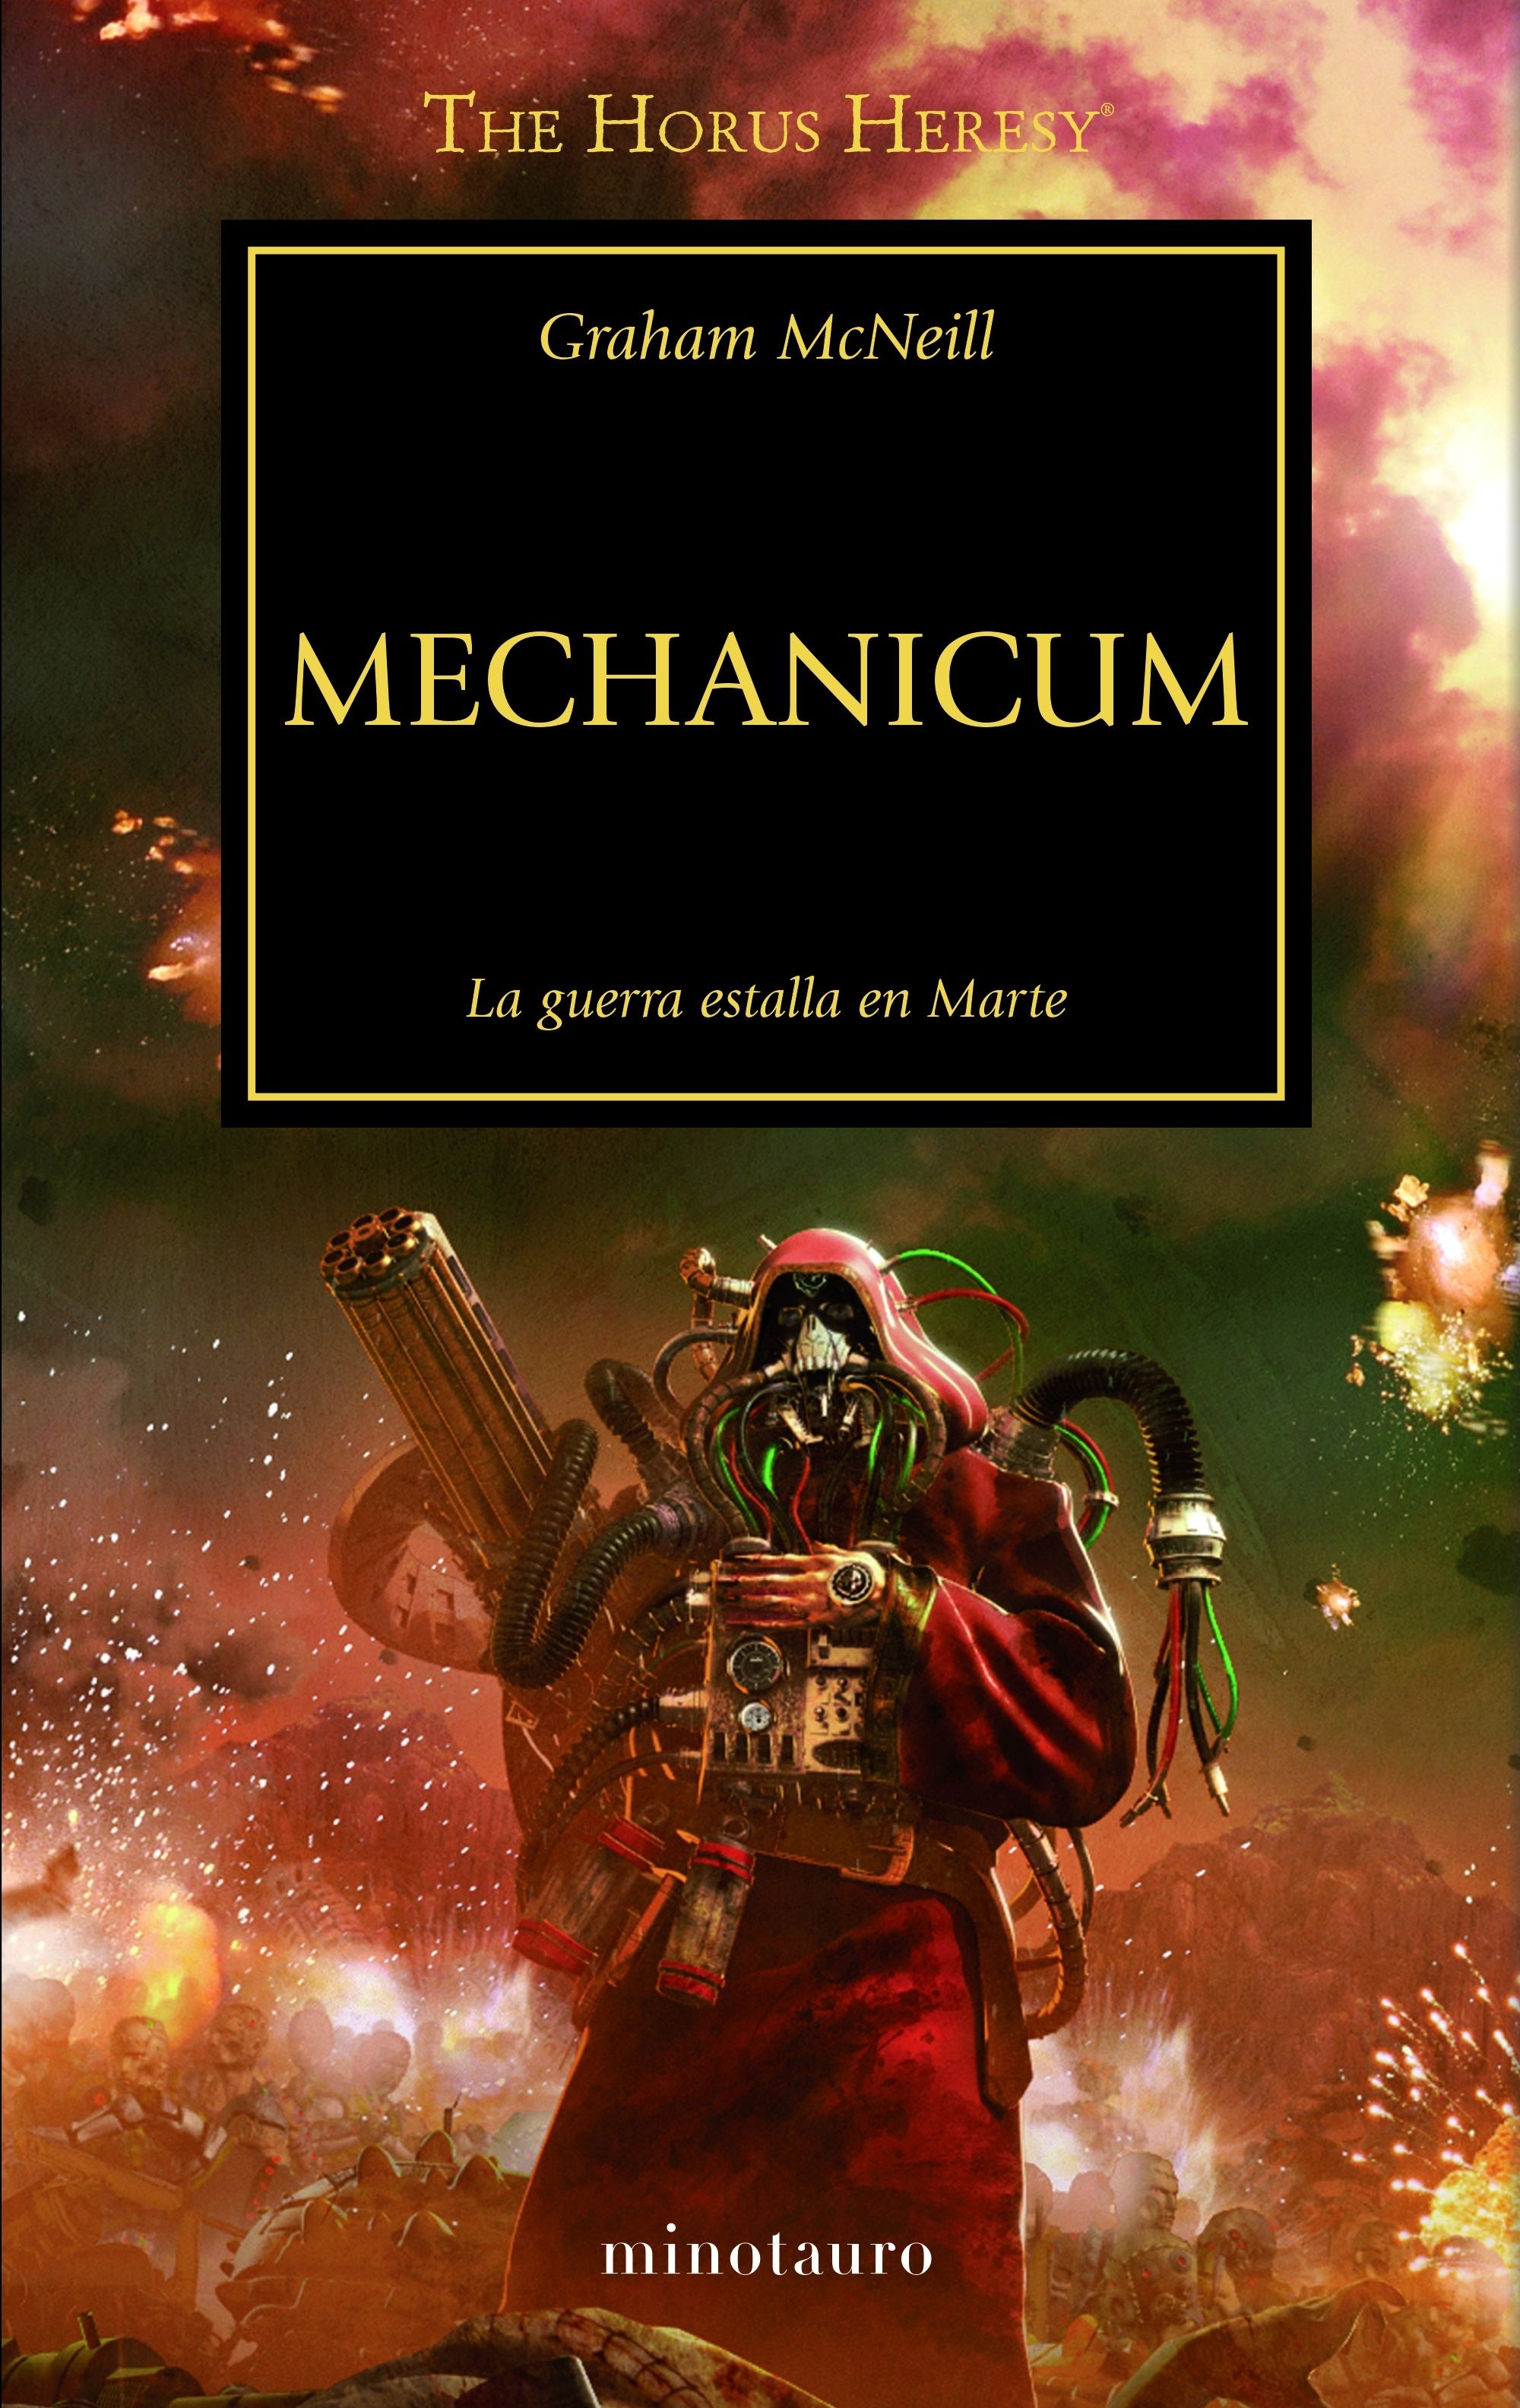 Mechanicum "La Herejía de Horus 9"